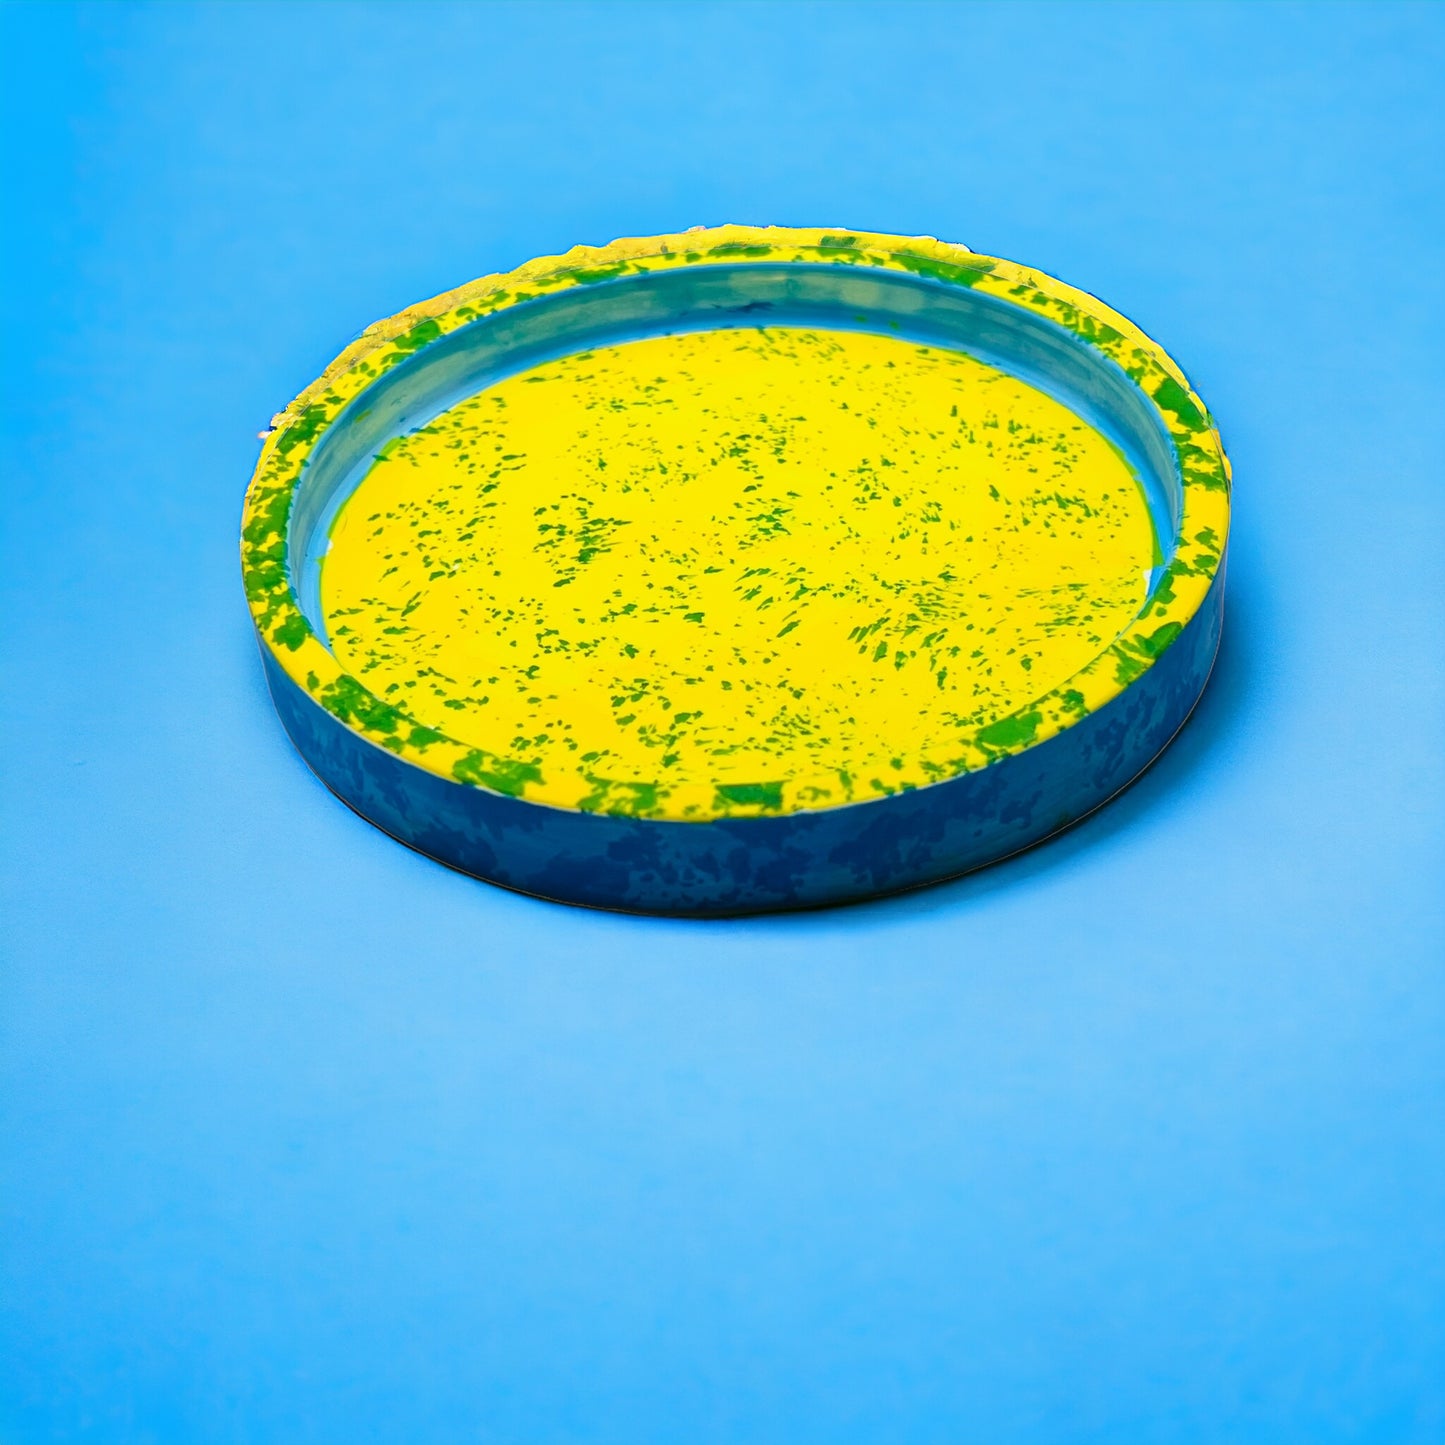 Plateau de vanité circulaire en céramique fait à la main Jendore jaune et bleu Splatter Chaos